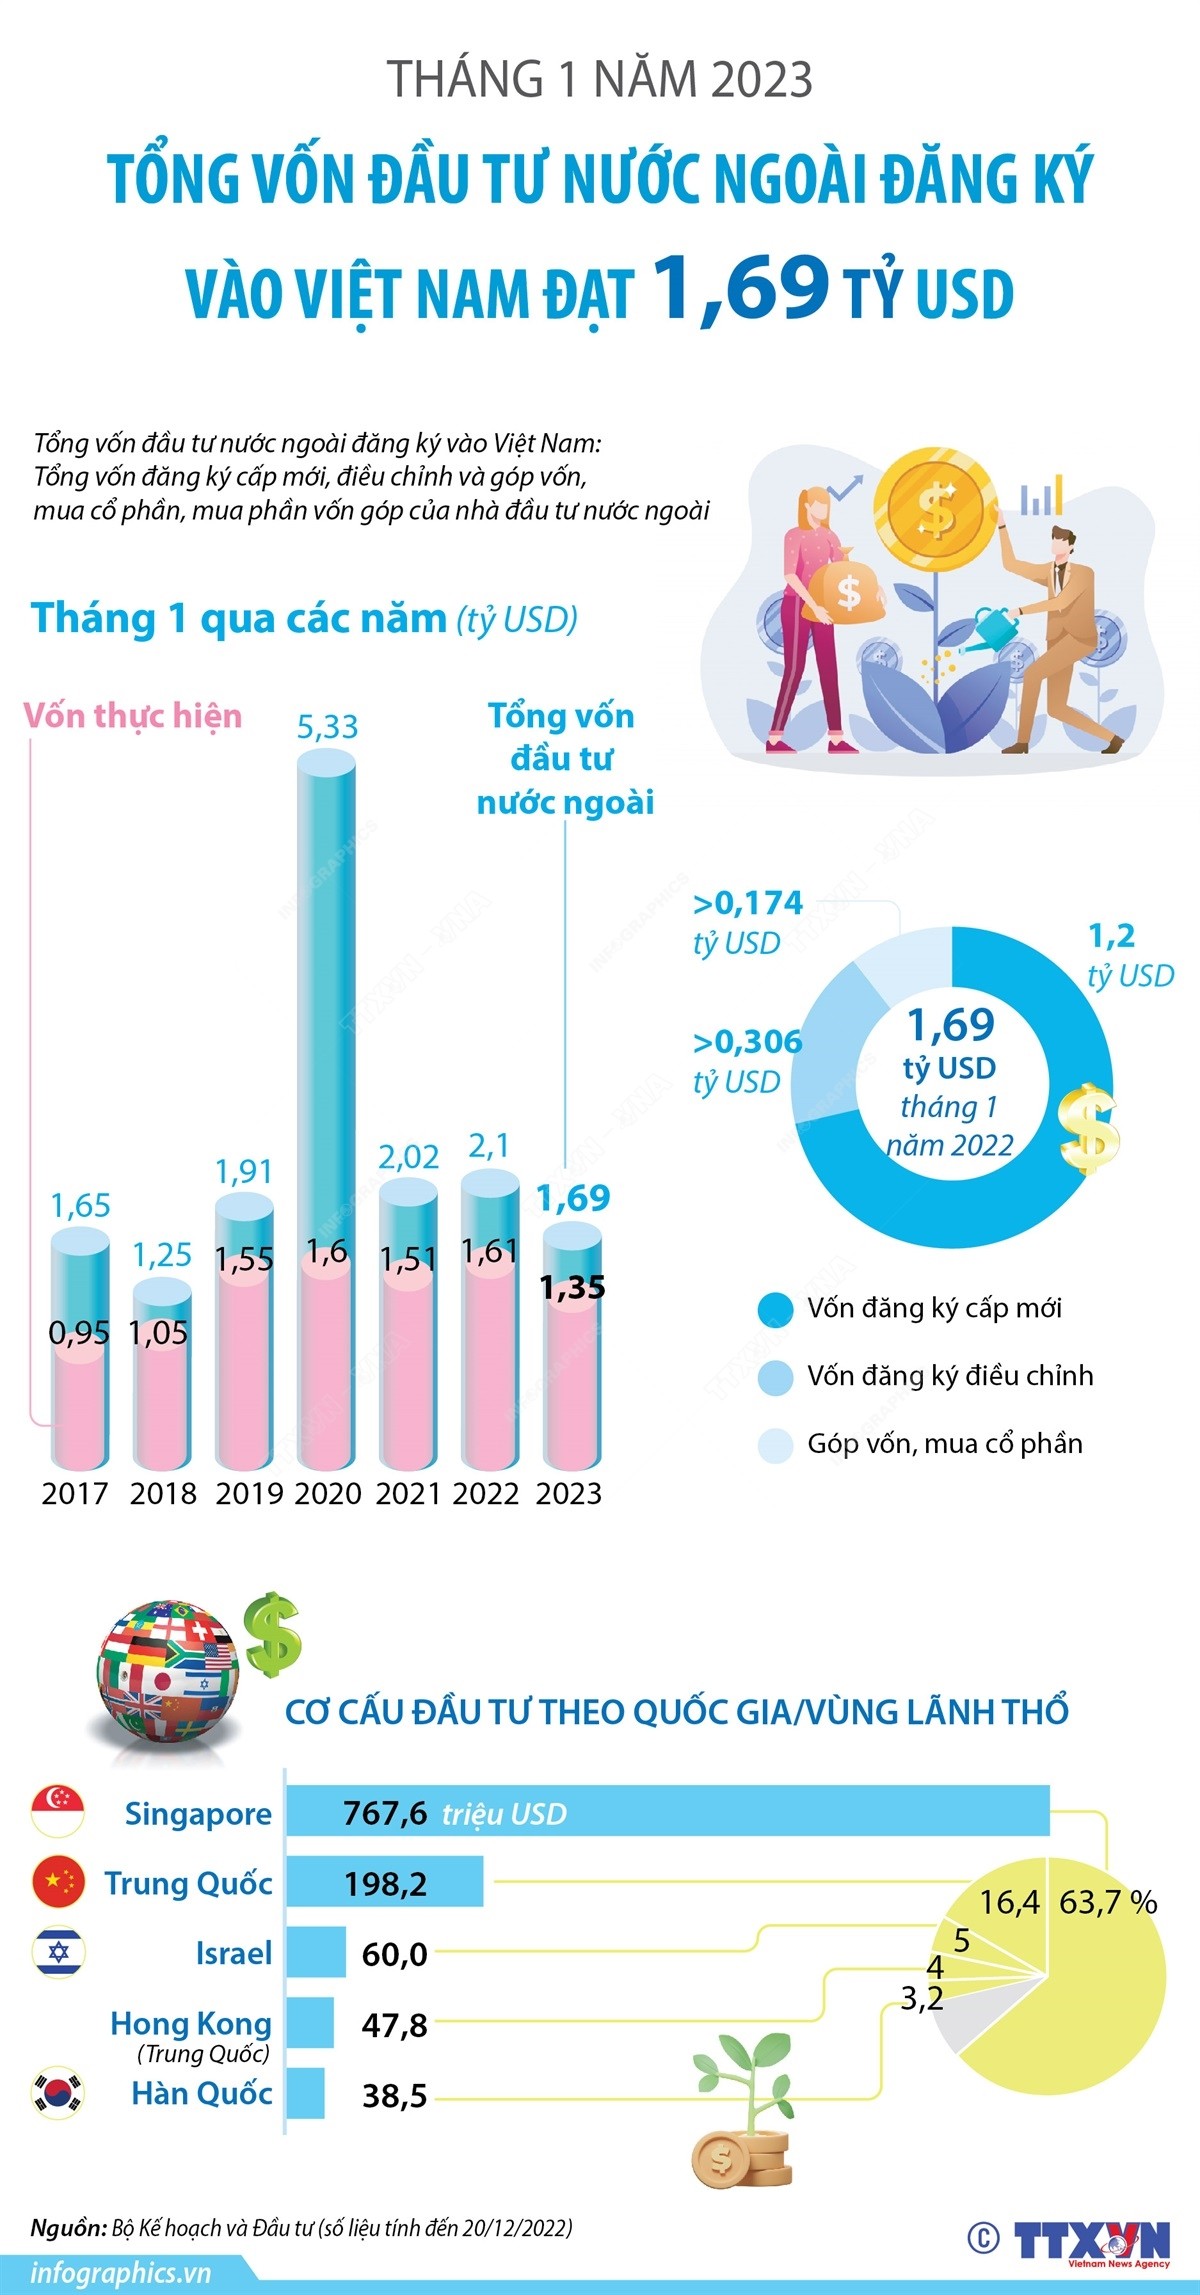 Tháng 1 năm 2023: Tổng vốn đầu tư nước ngoài đăng ký vào Việt Nam đạt 1,69 tỷ USD